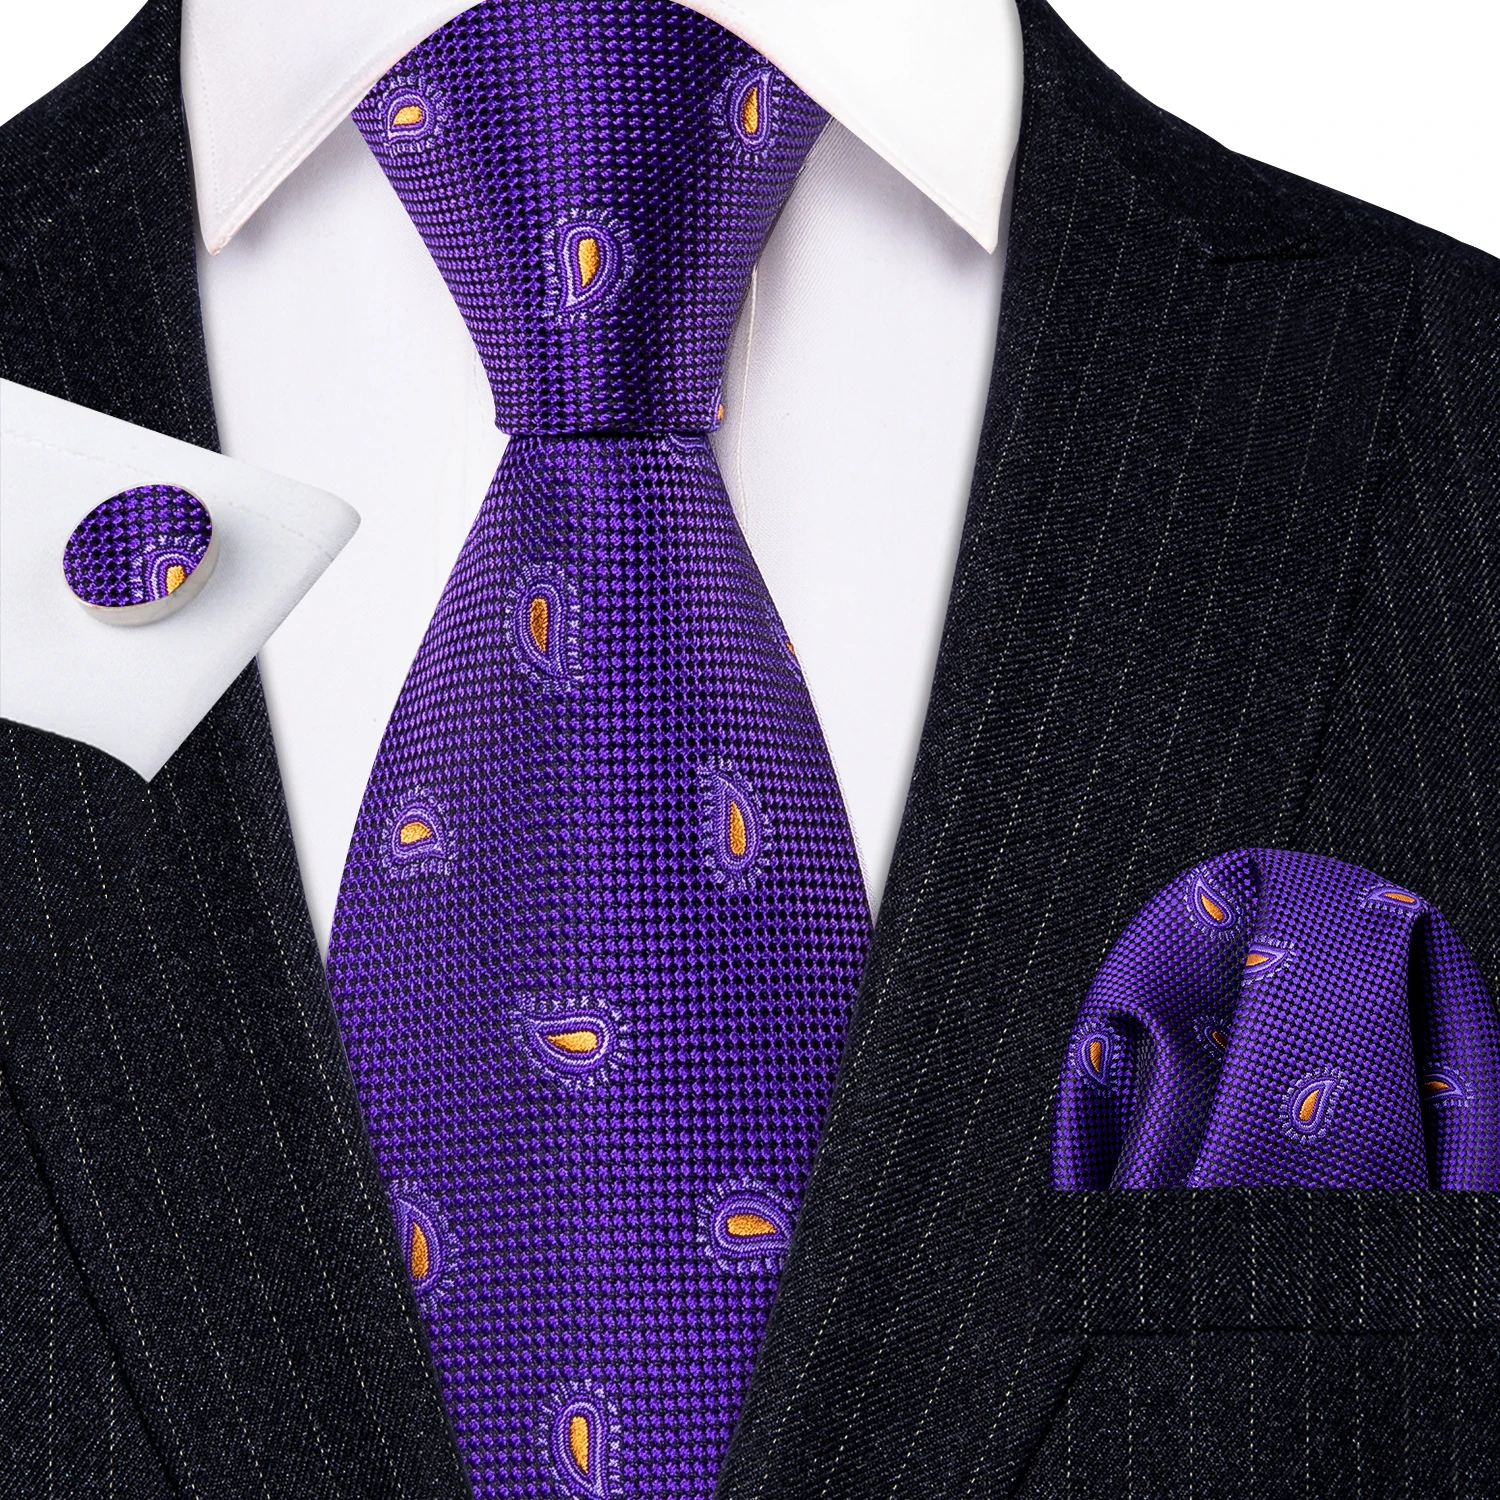 

Новые модные мужские галстуки фиолетовые Пейсли 100% шелк жаккард для вечеринки бизнес платок запонки галстук для мужчин Барри. Ван